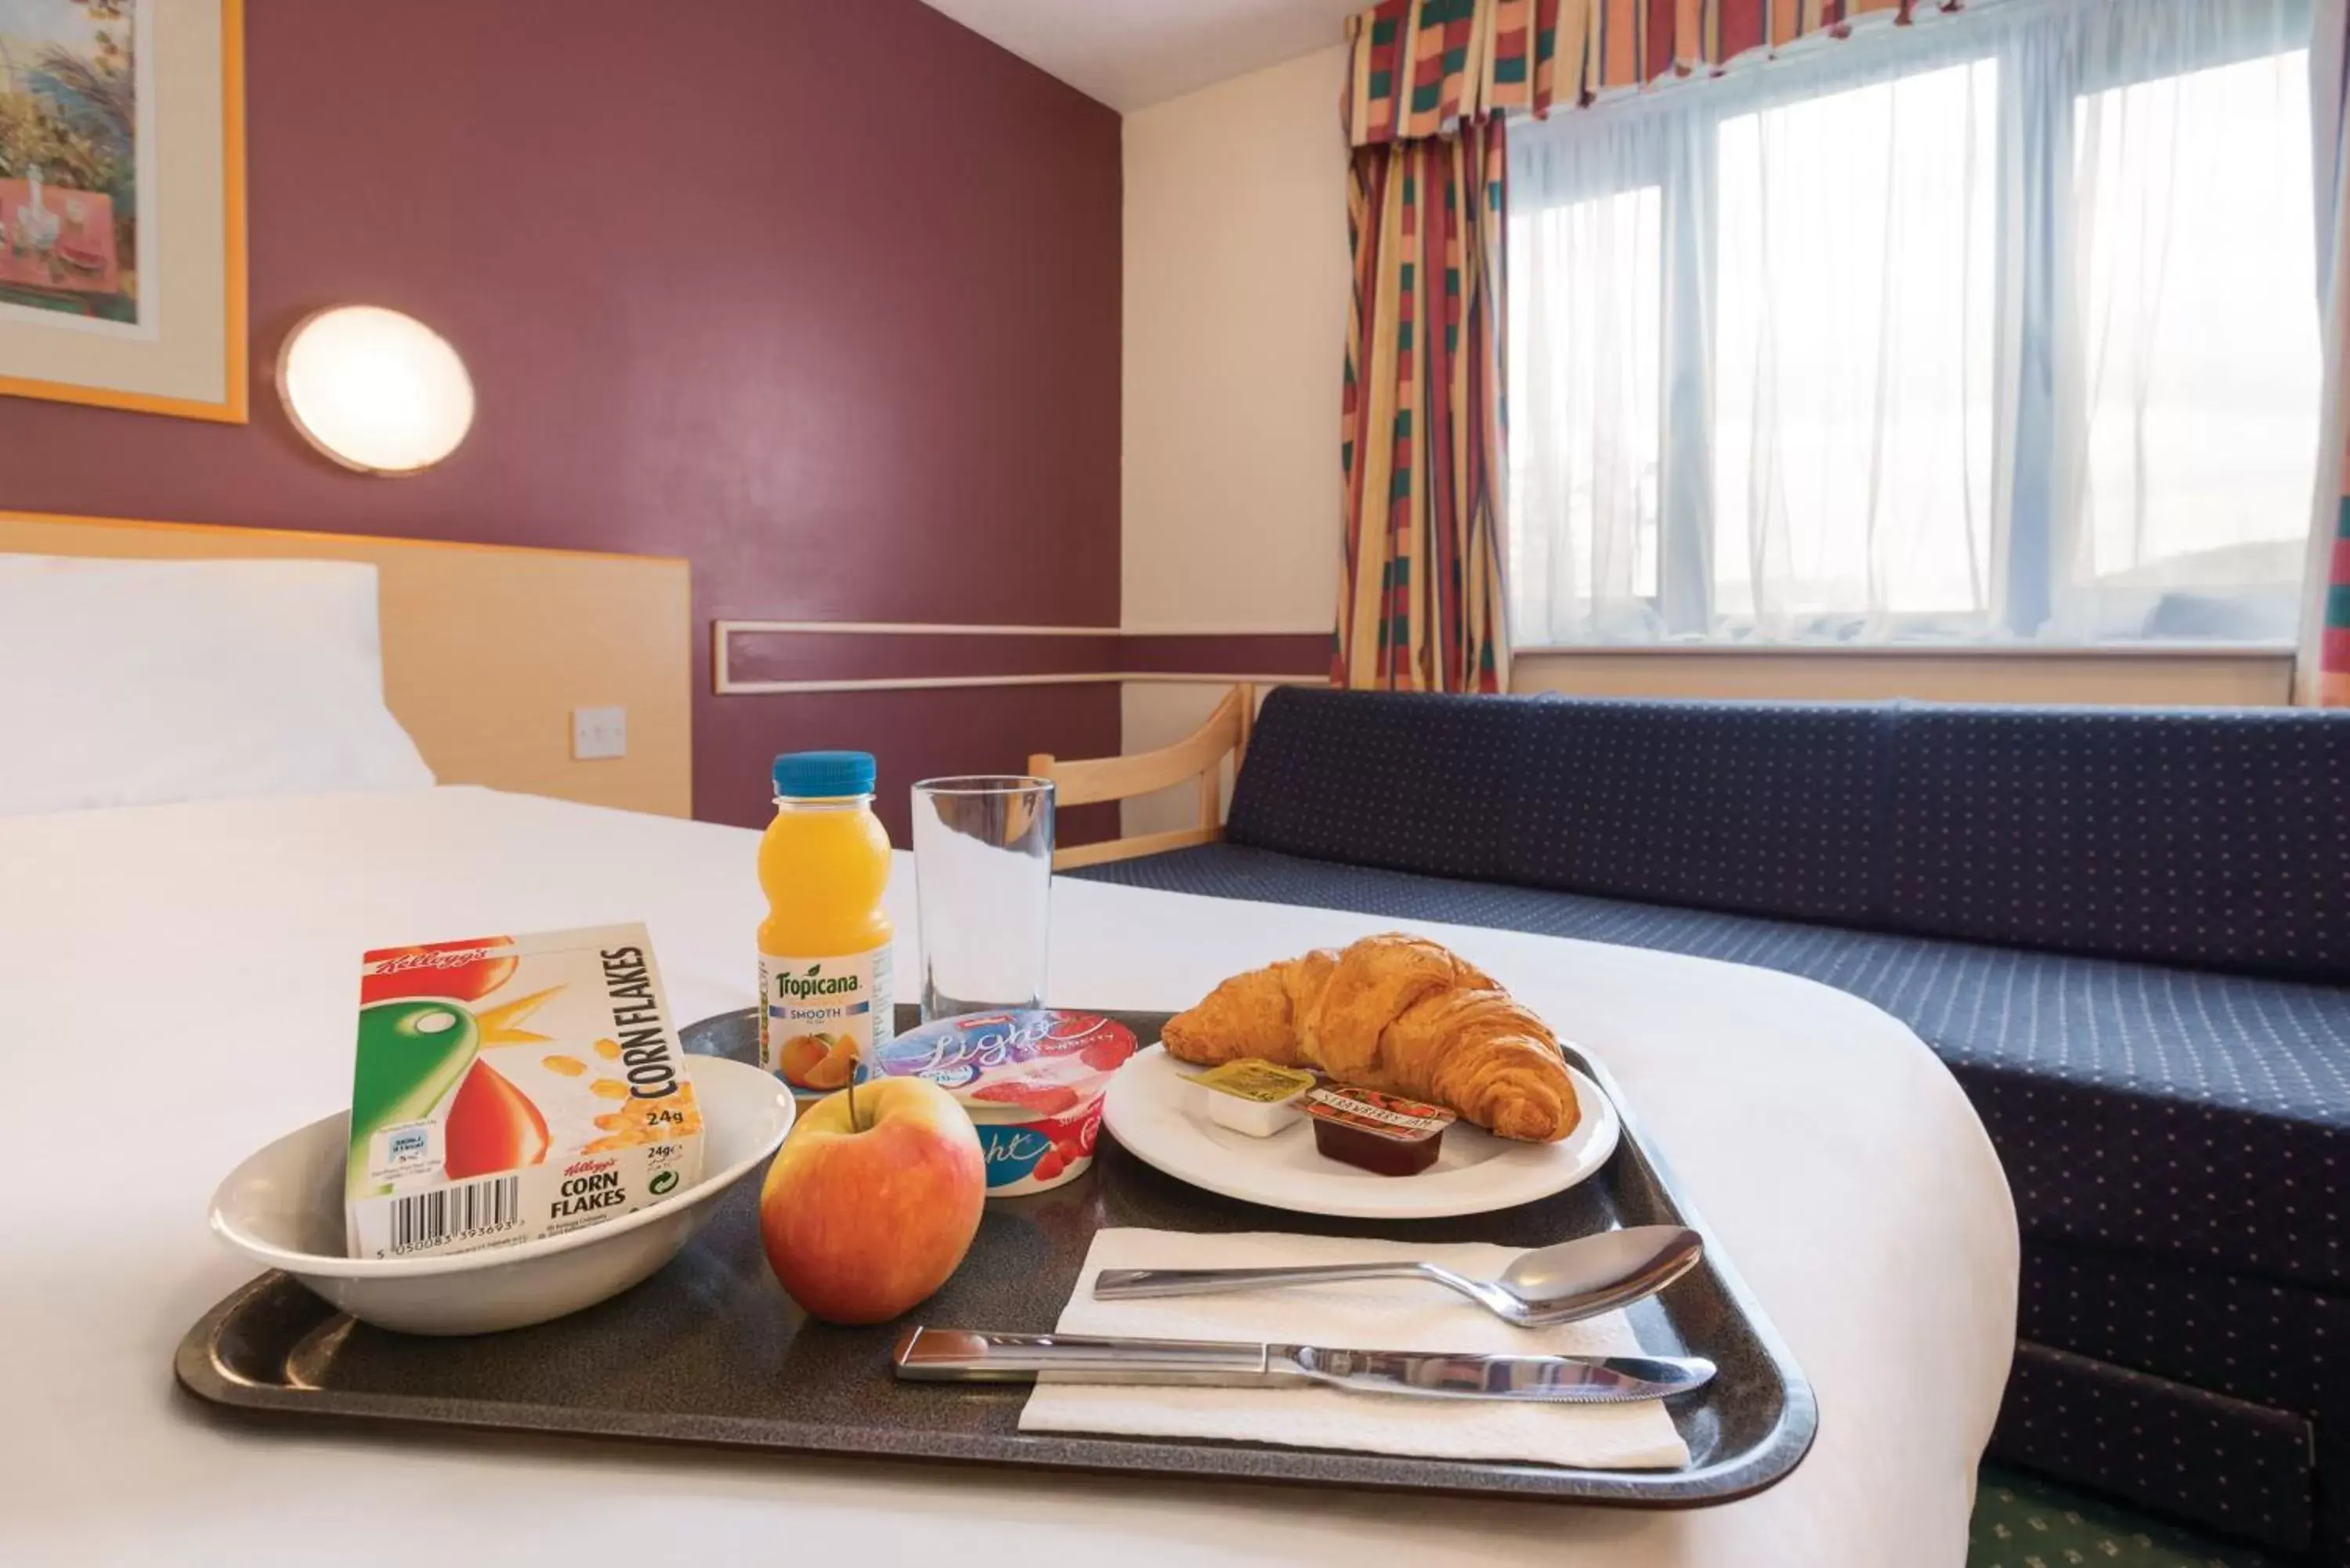 Continental breakfast, Breakfast in Days Inn Hotel Sheffield South